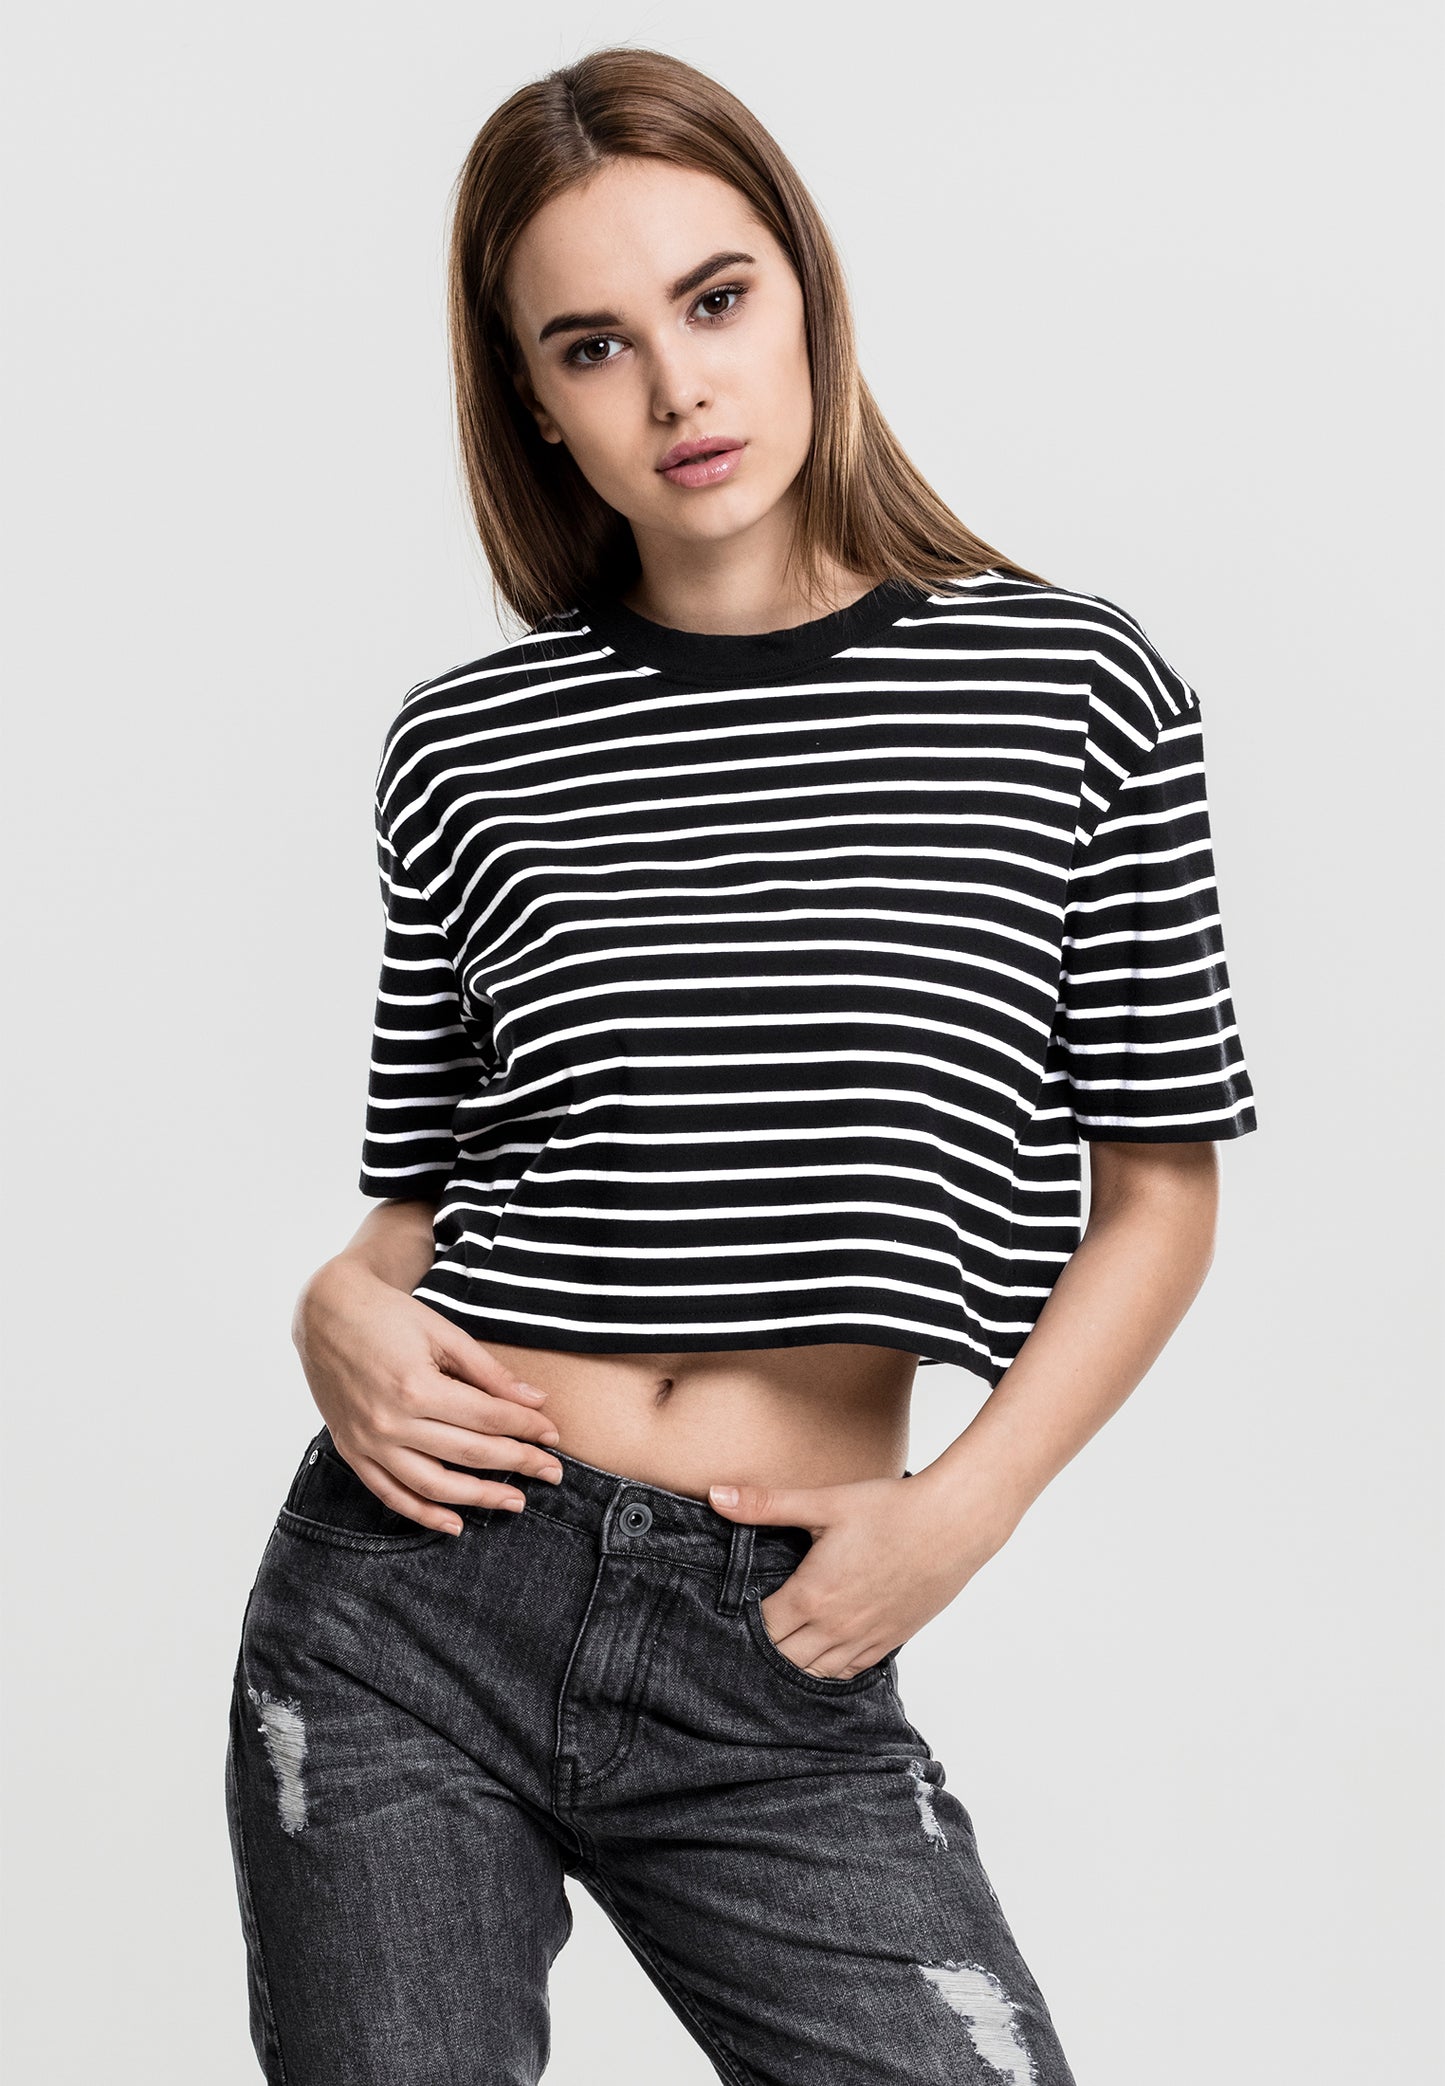 Urban Classics Damen Short Gestreiftes Oversized T-Shirt